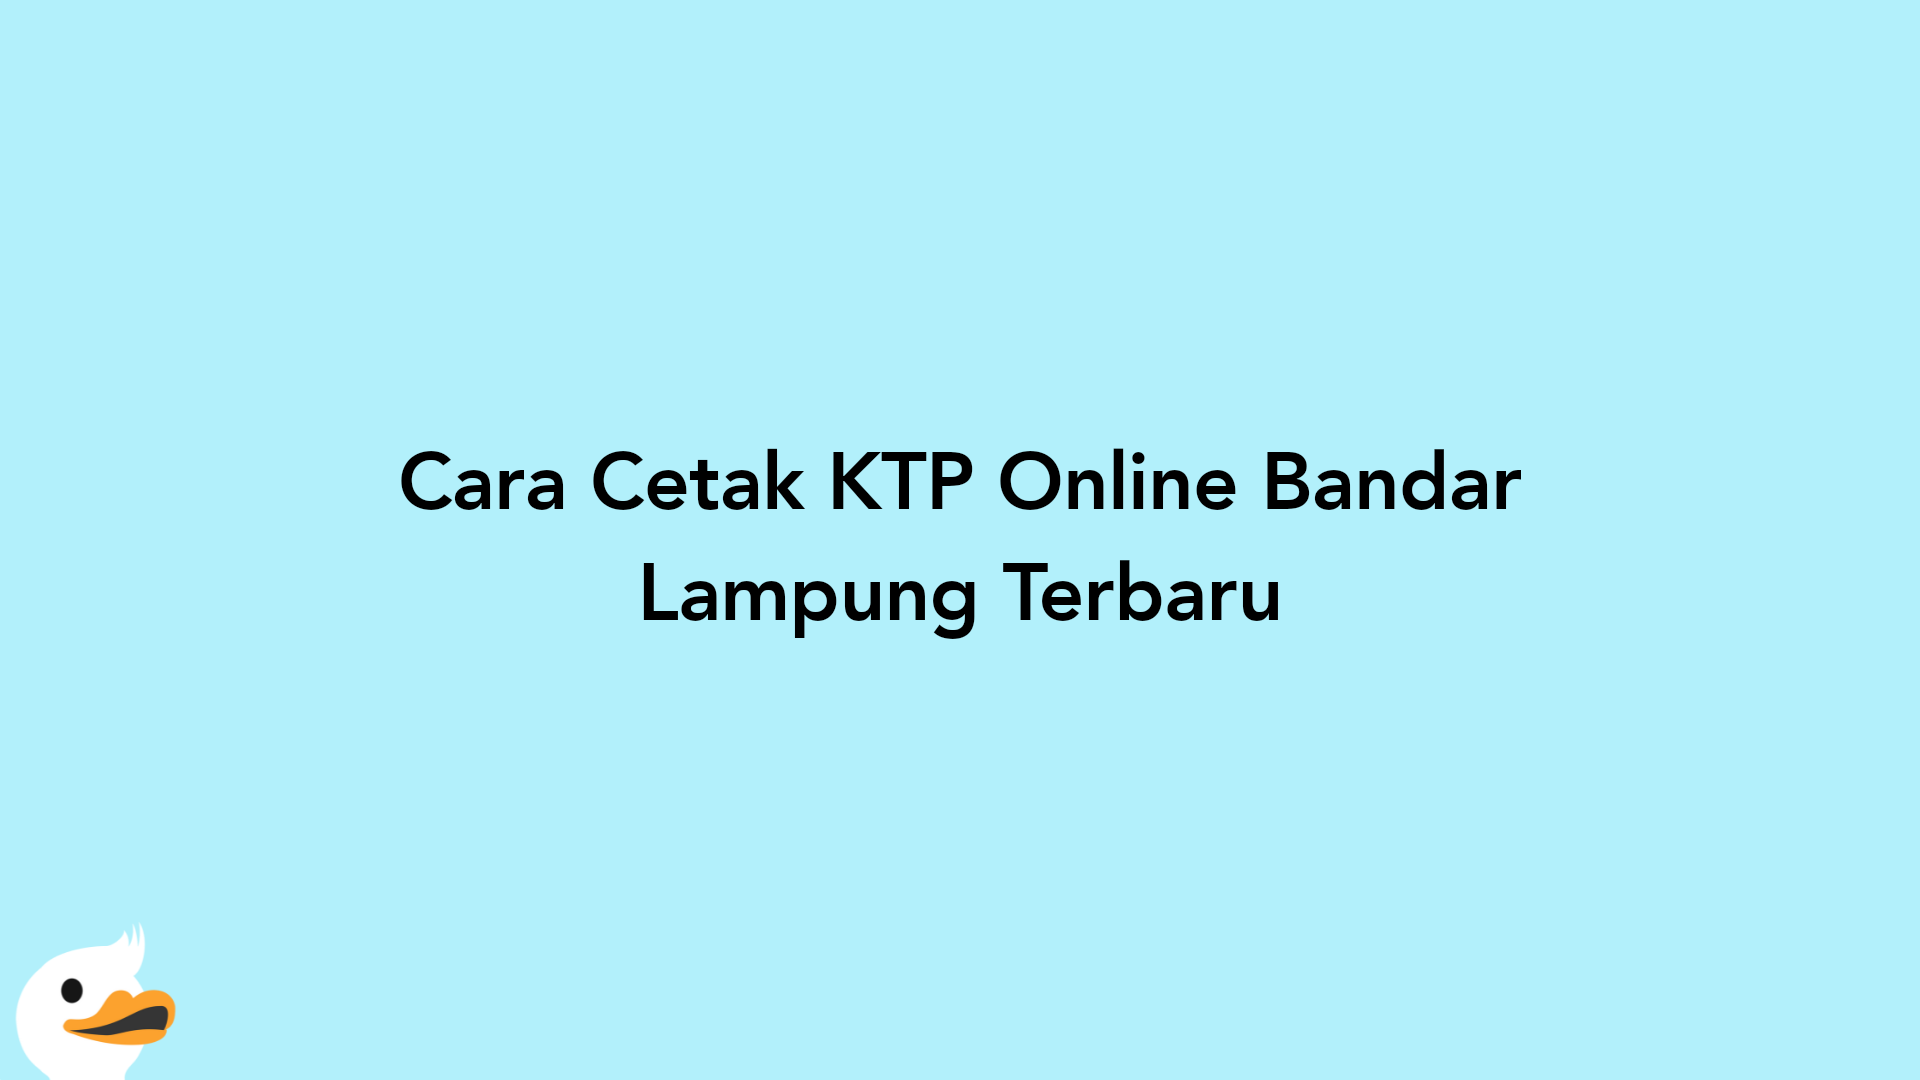 Cara Cetak KTP Online Bandar Lampung Terbaru